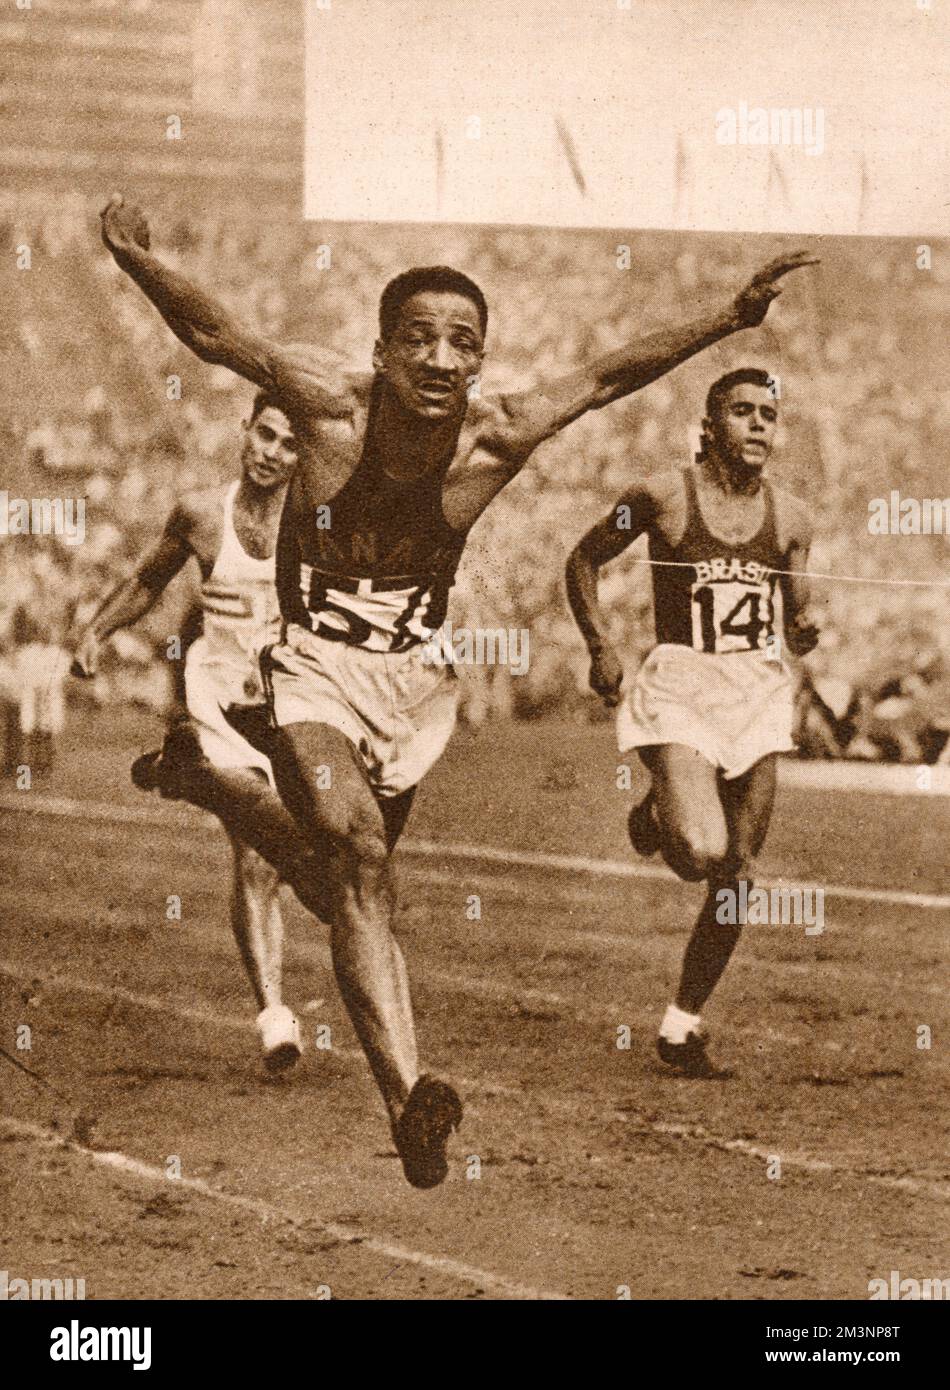 Sprinter Lloyd B. Labeach di Panama spinge in avanti per vincere Heat 4 nel secondo round del concorso 100 metri. Il suo tempo era di 10,5 secondi. Data: 1948 Foto Stock